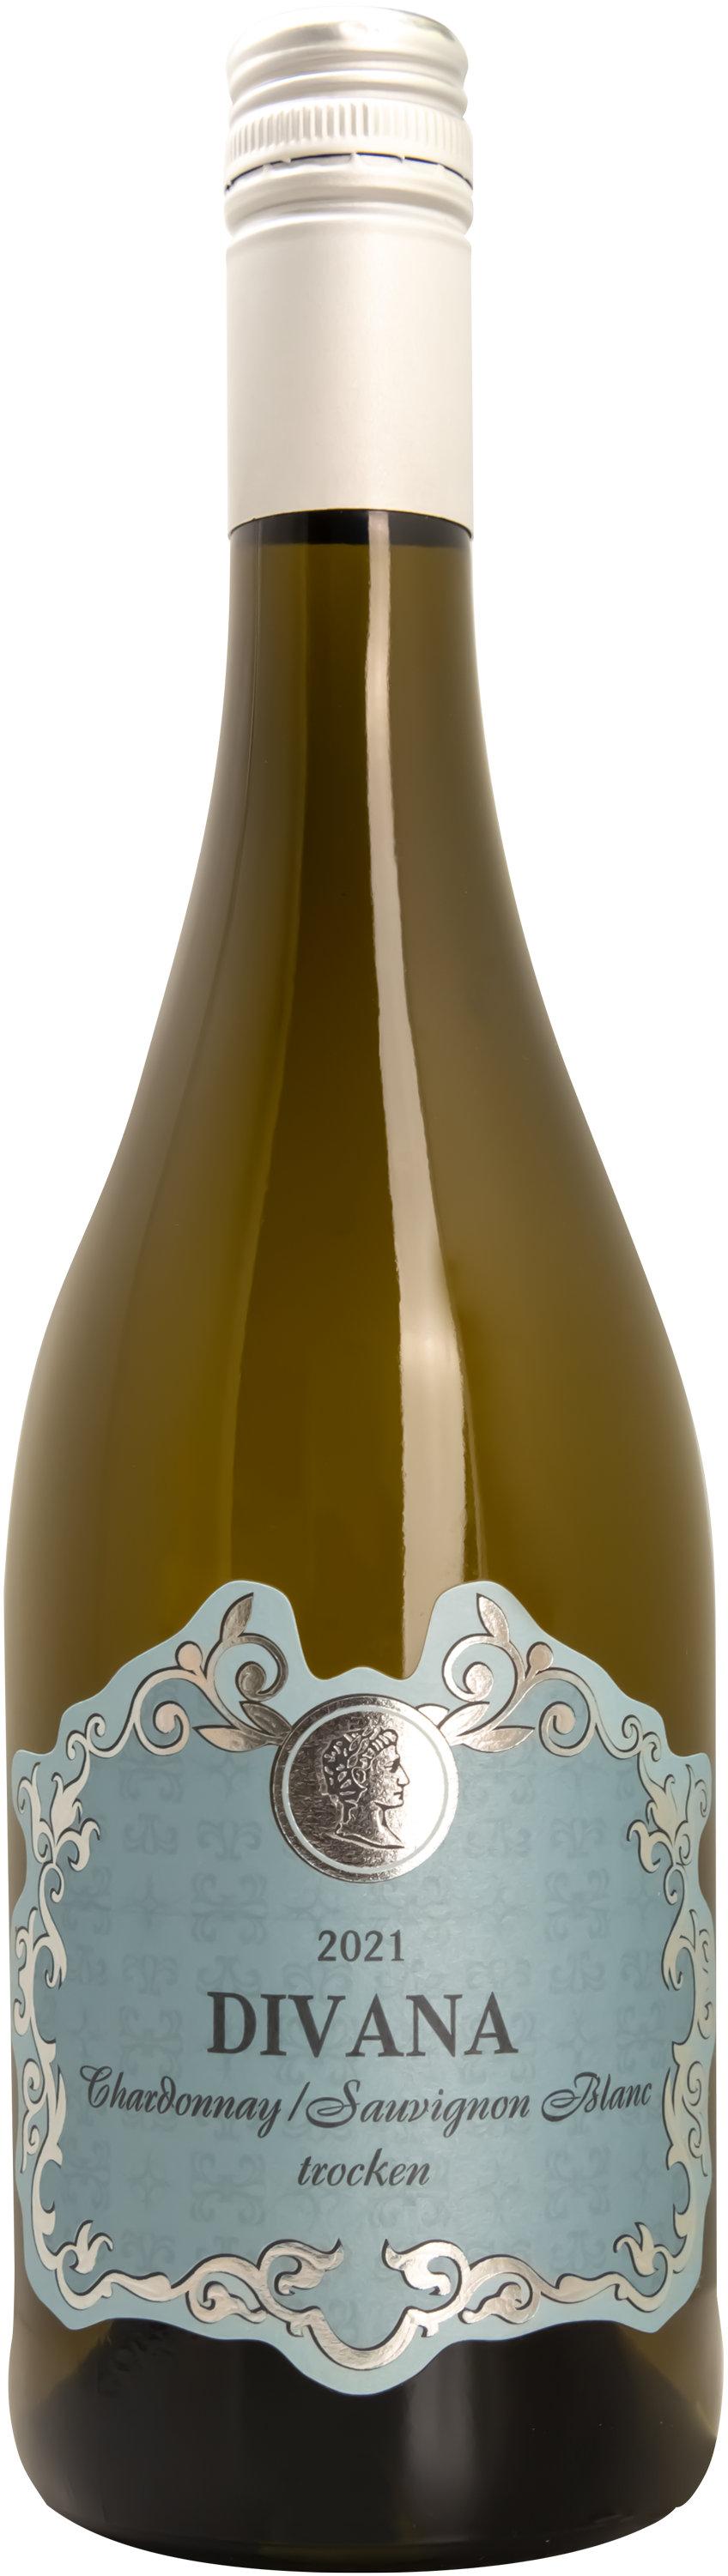 2021 DIVANA Chardonnay & Sauvignon Blanc trocken 0,75 L - Bottwartaler Winzer